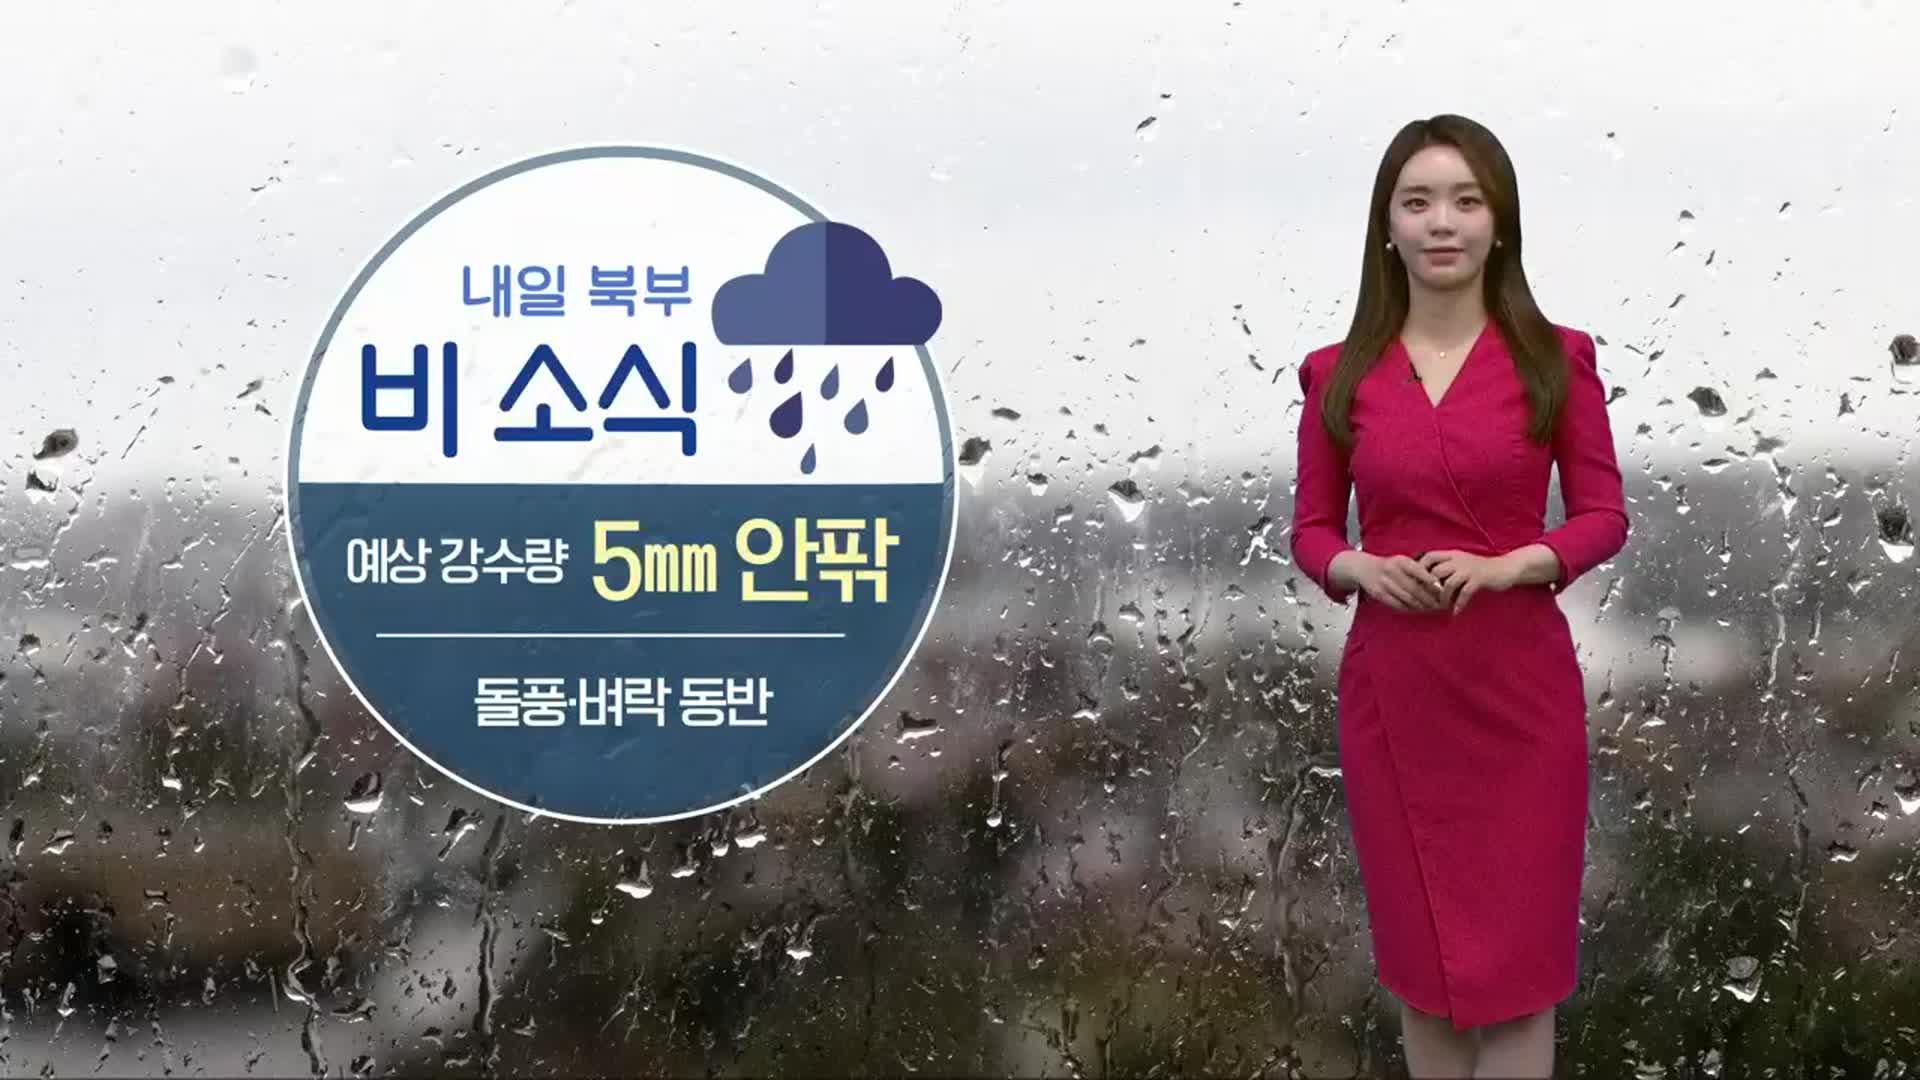 [날씨] 충북 북부 내일 비 조금…오전 미세먼지 ‘나쁨’